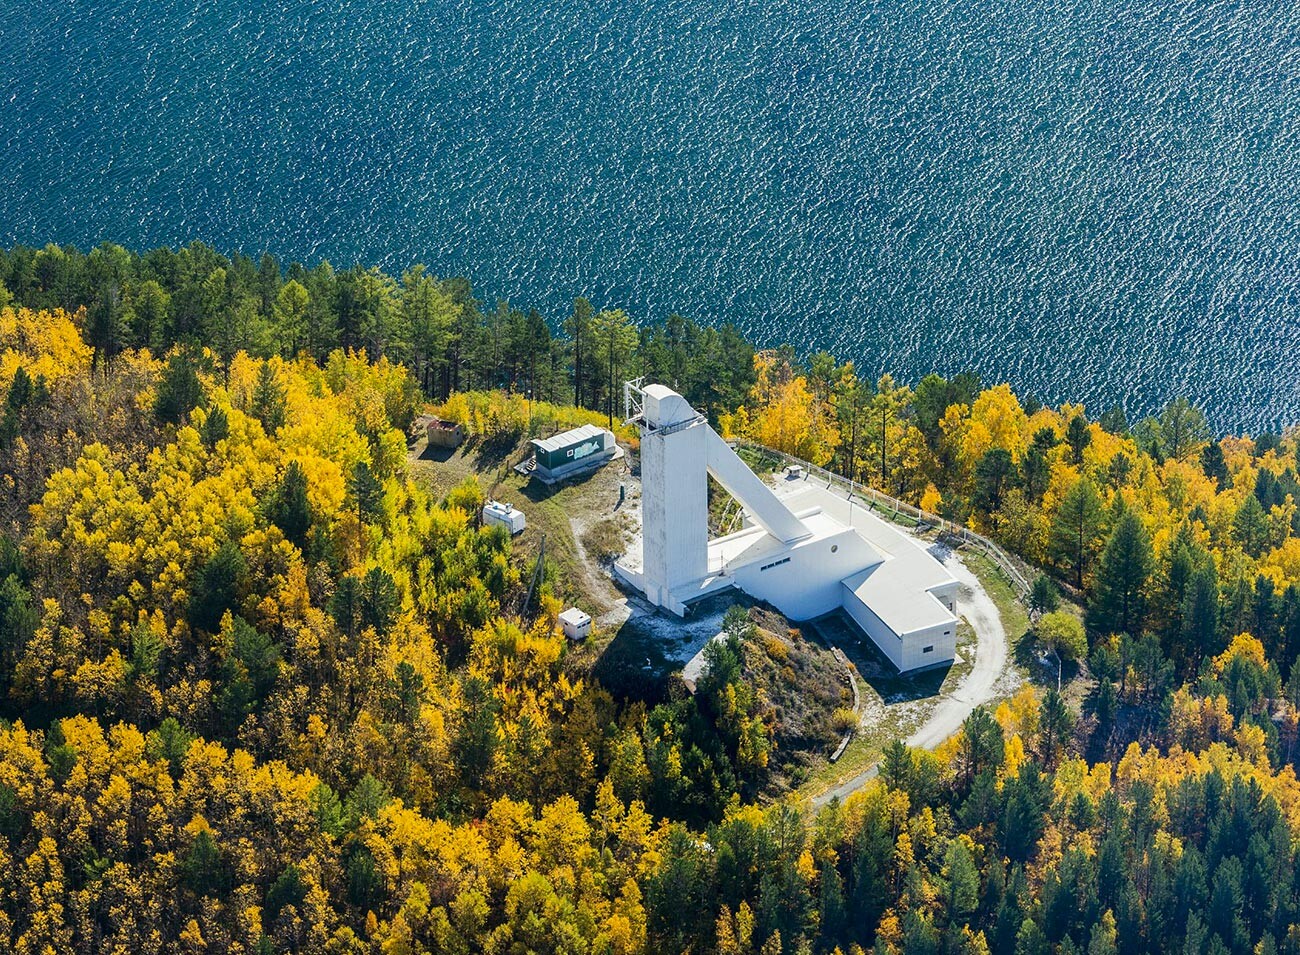 Bajkalski astrofizički opservatorij na periferiji sela Listvijanka na južnoj obali Bajkalskog jezera